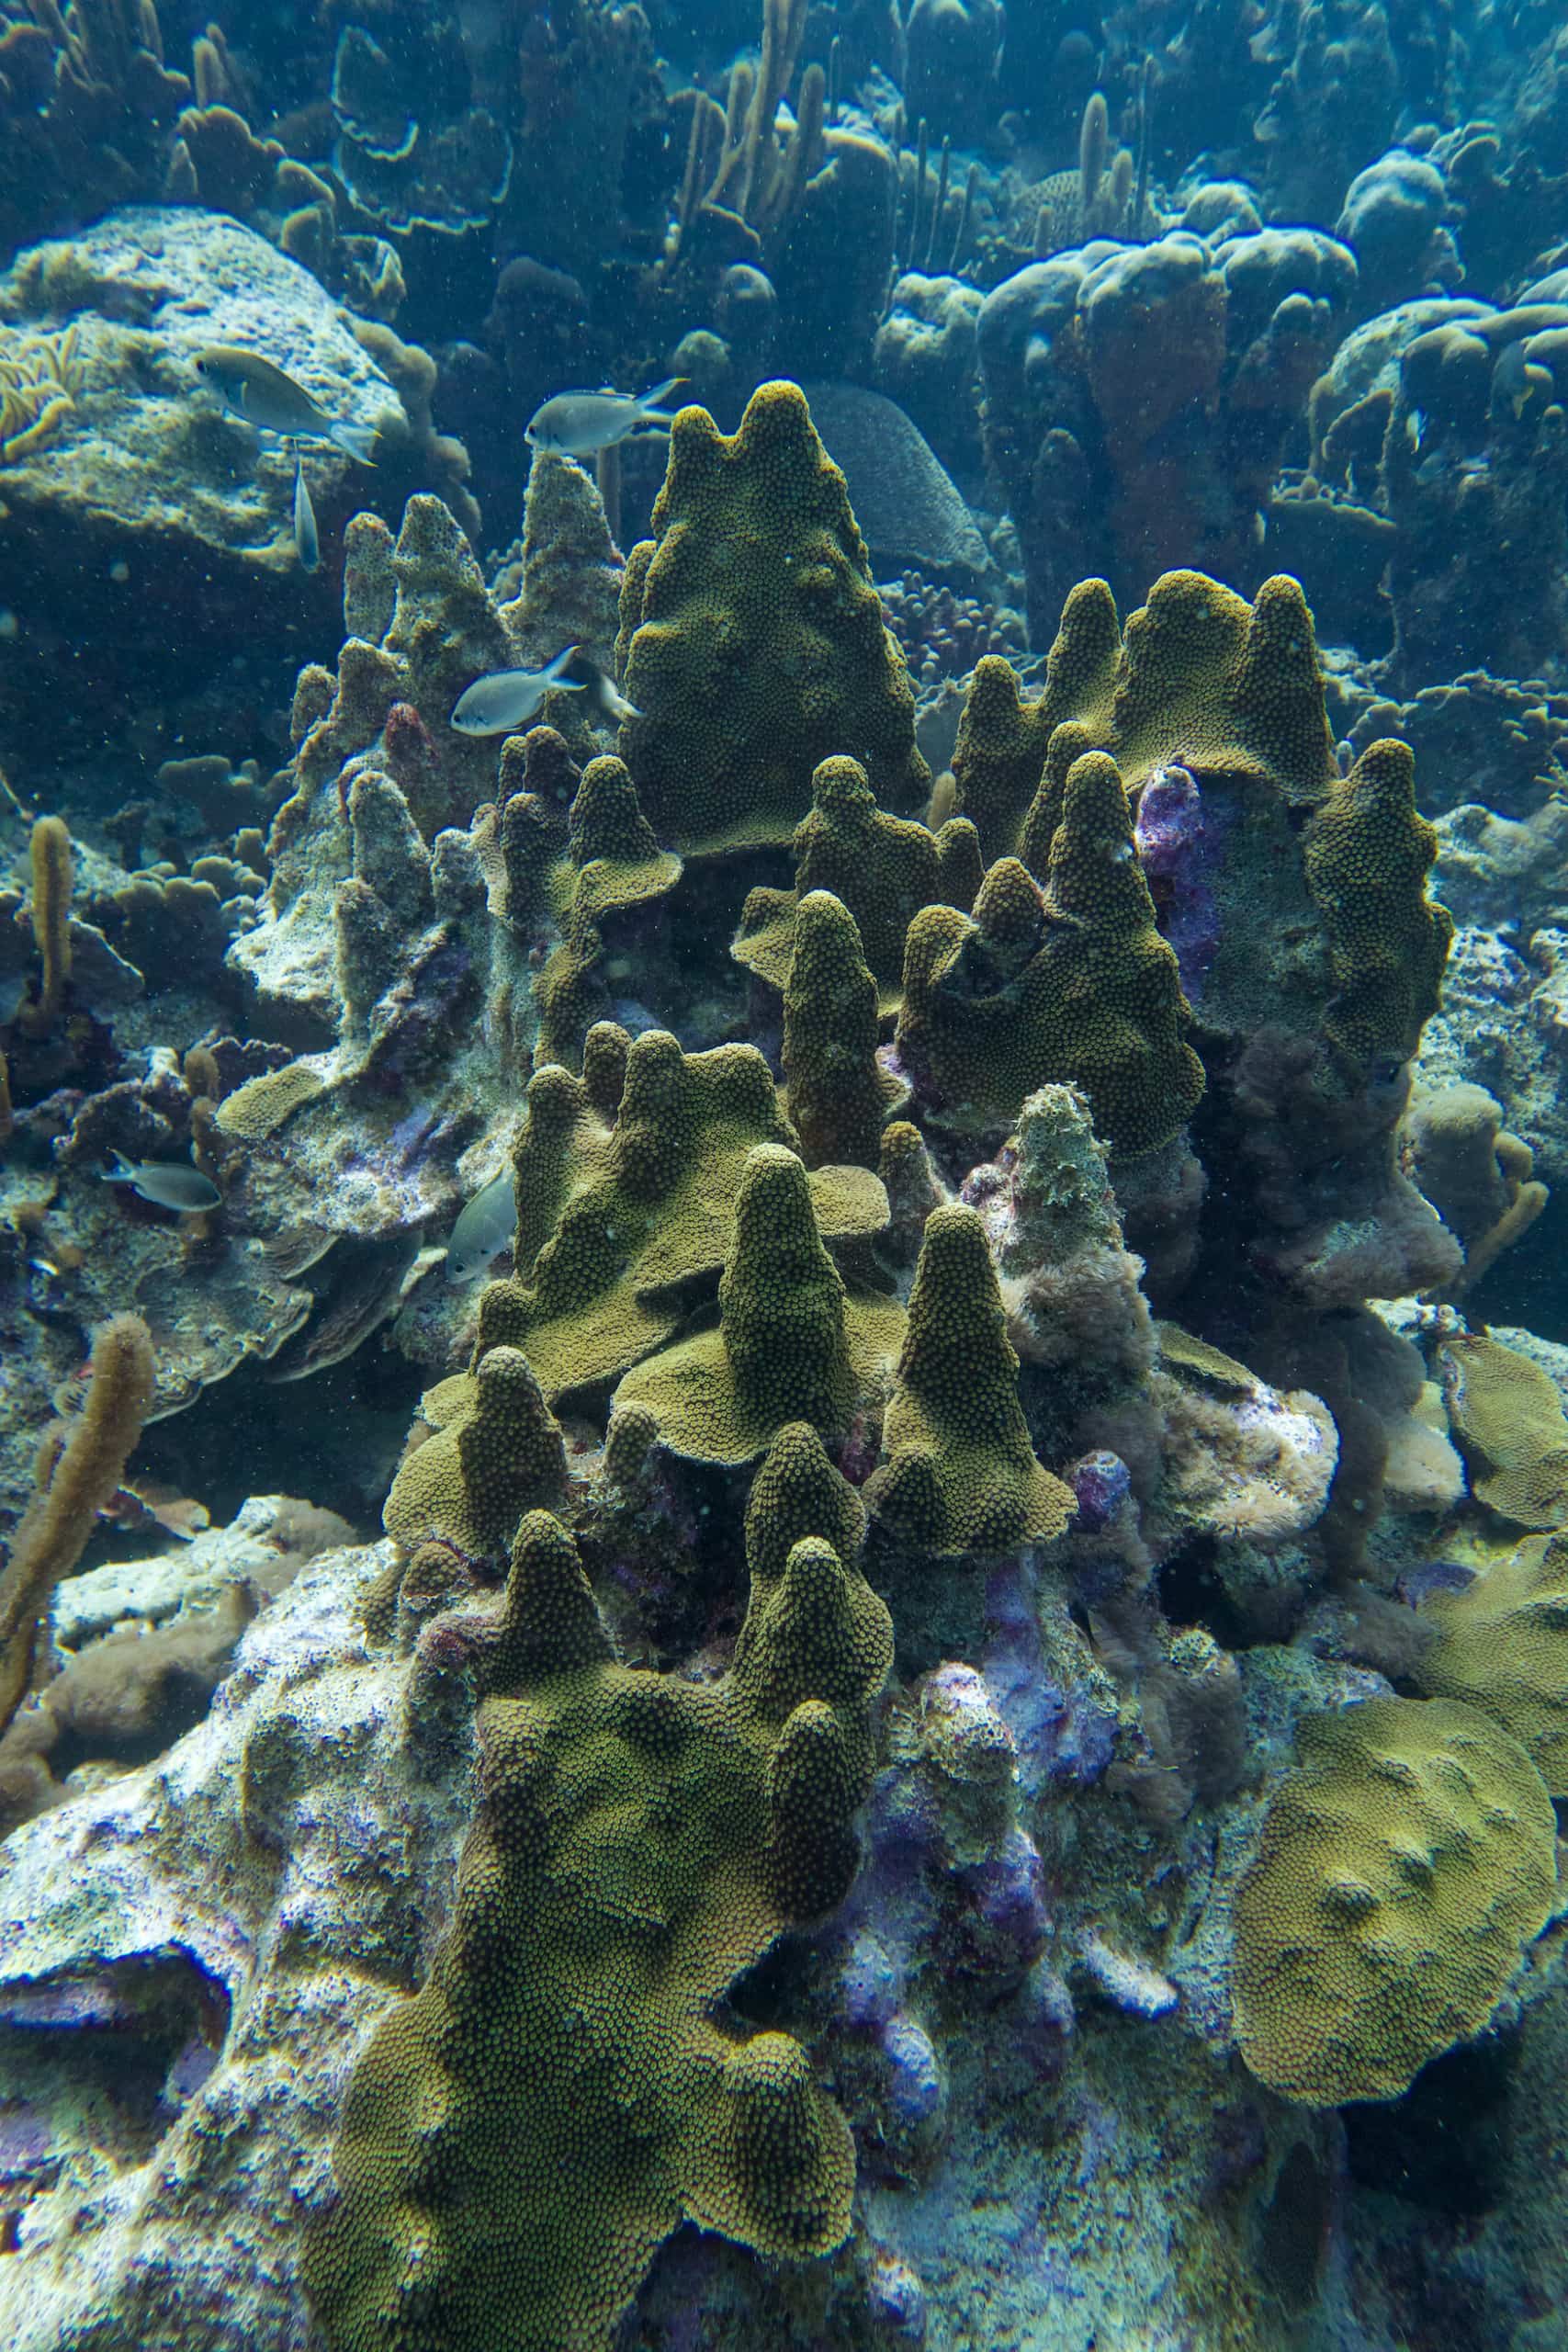 Pflanzen unter Wasser sehen aus wie Pilze und werden daher auch Mushroom Forst genannt